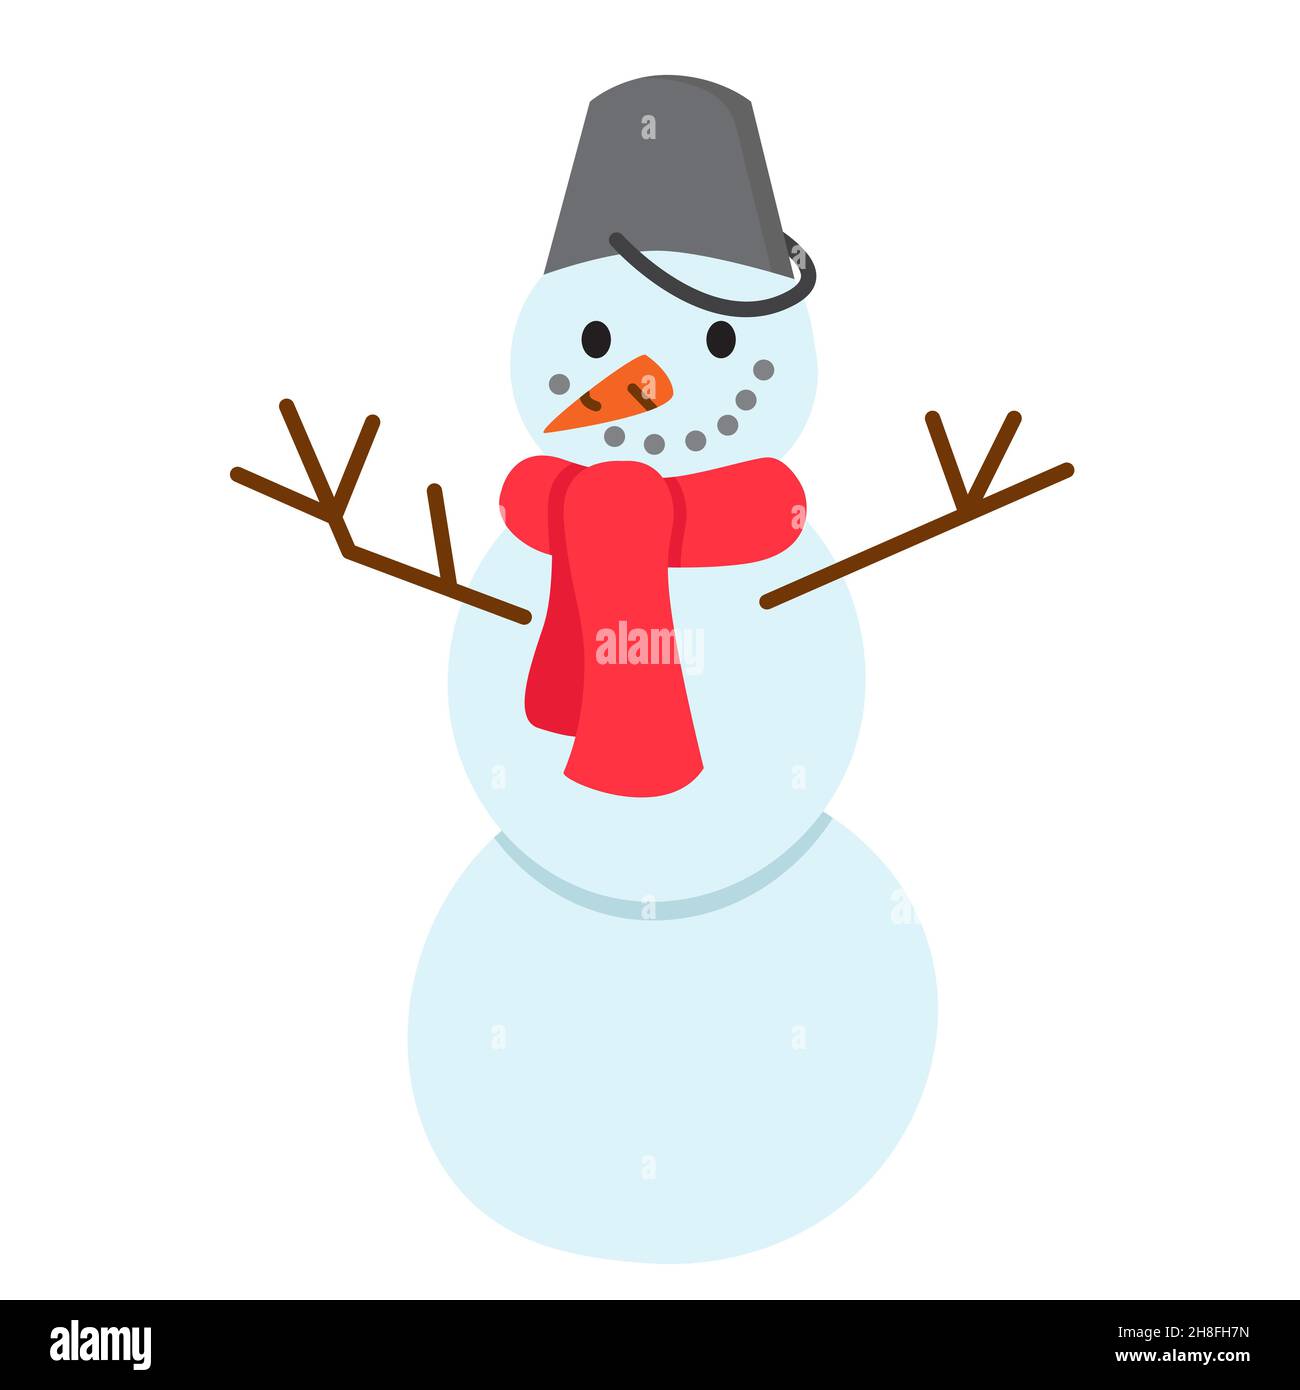 Divertido muñeco de nieve de dibujos animados con bufanda y cubo en la cabeza. Bonita ilustración vectorial de estilo plano. Estampado navideño e invernal. Ilustración de Ilustración del Vector